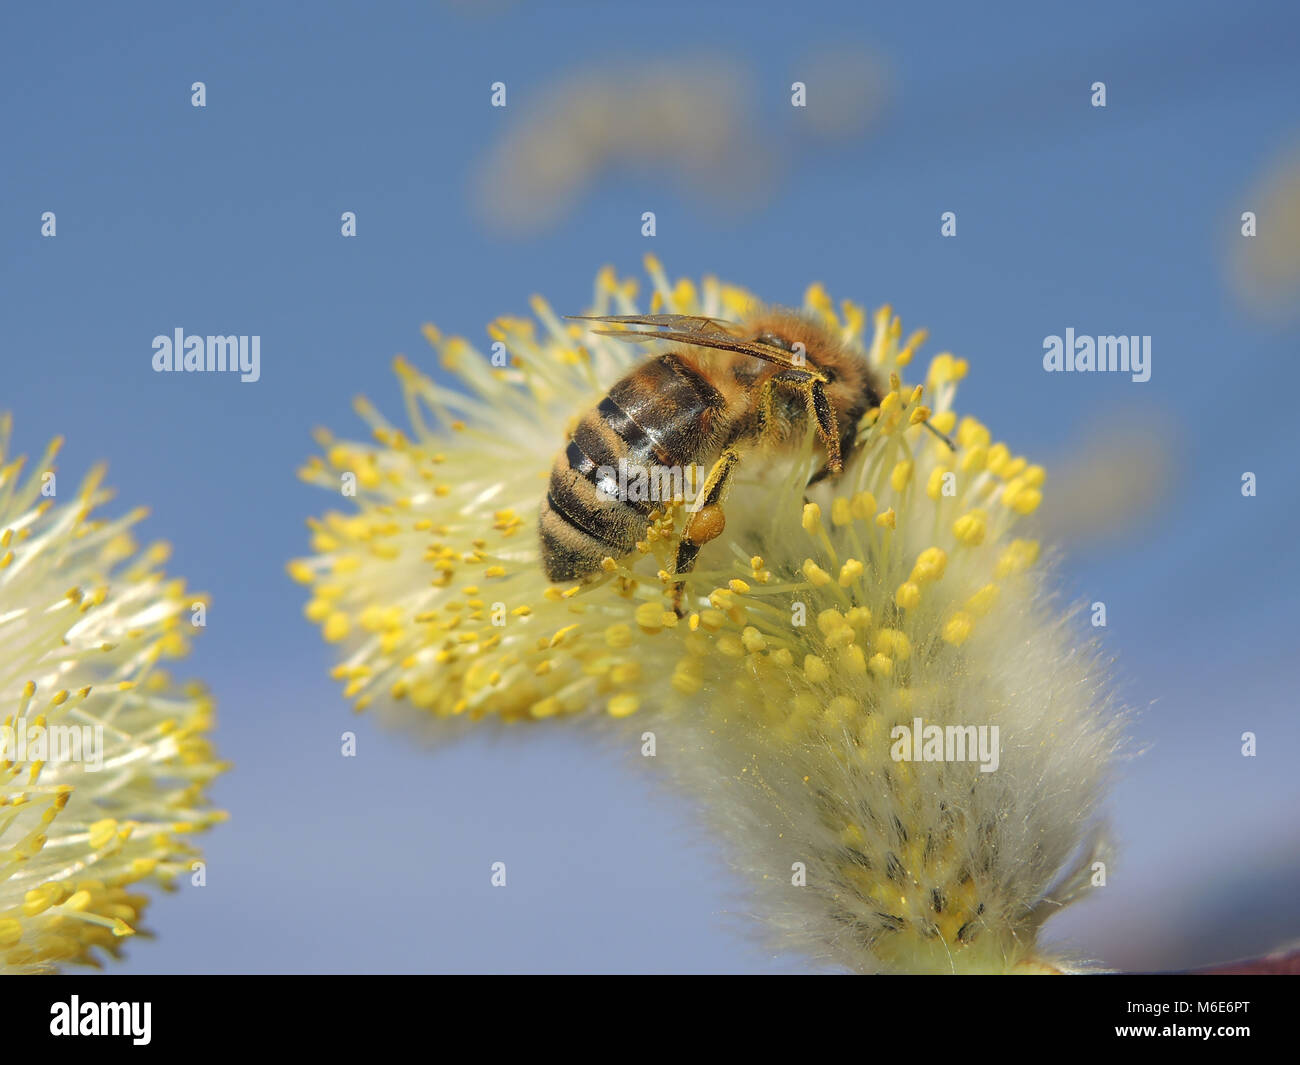 https://c8.alamy.com/comp/M6E6PT/bee-willow-3-M6E6PT.jpg